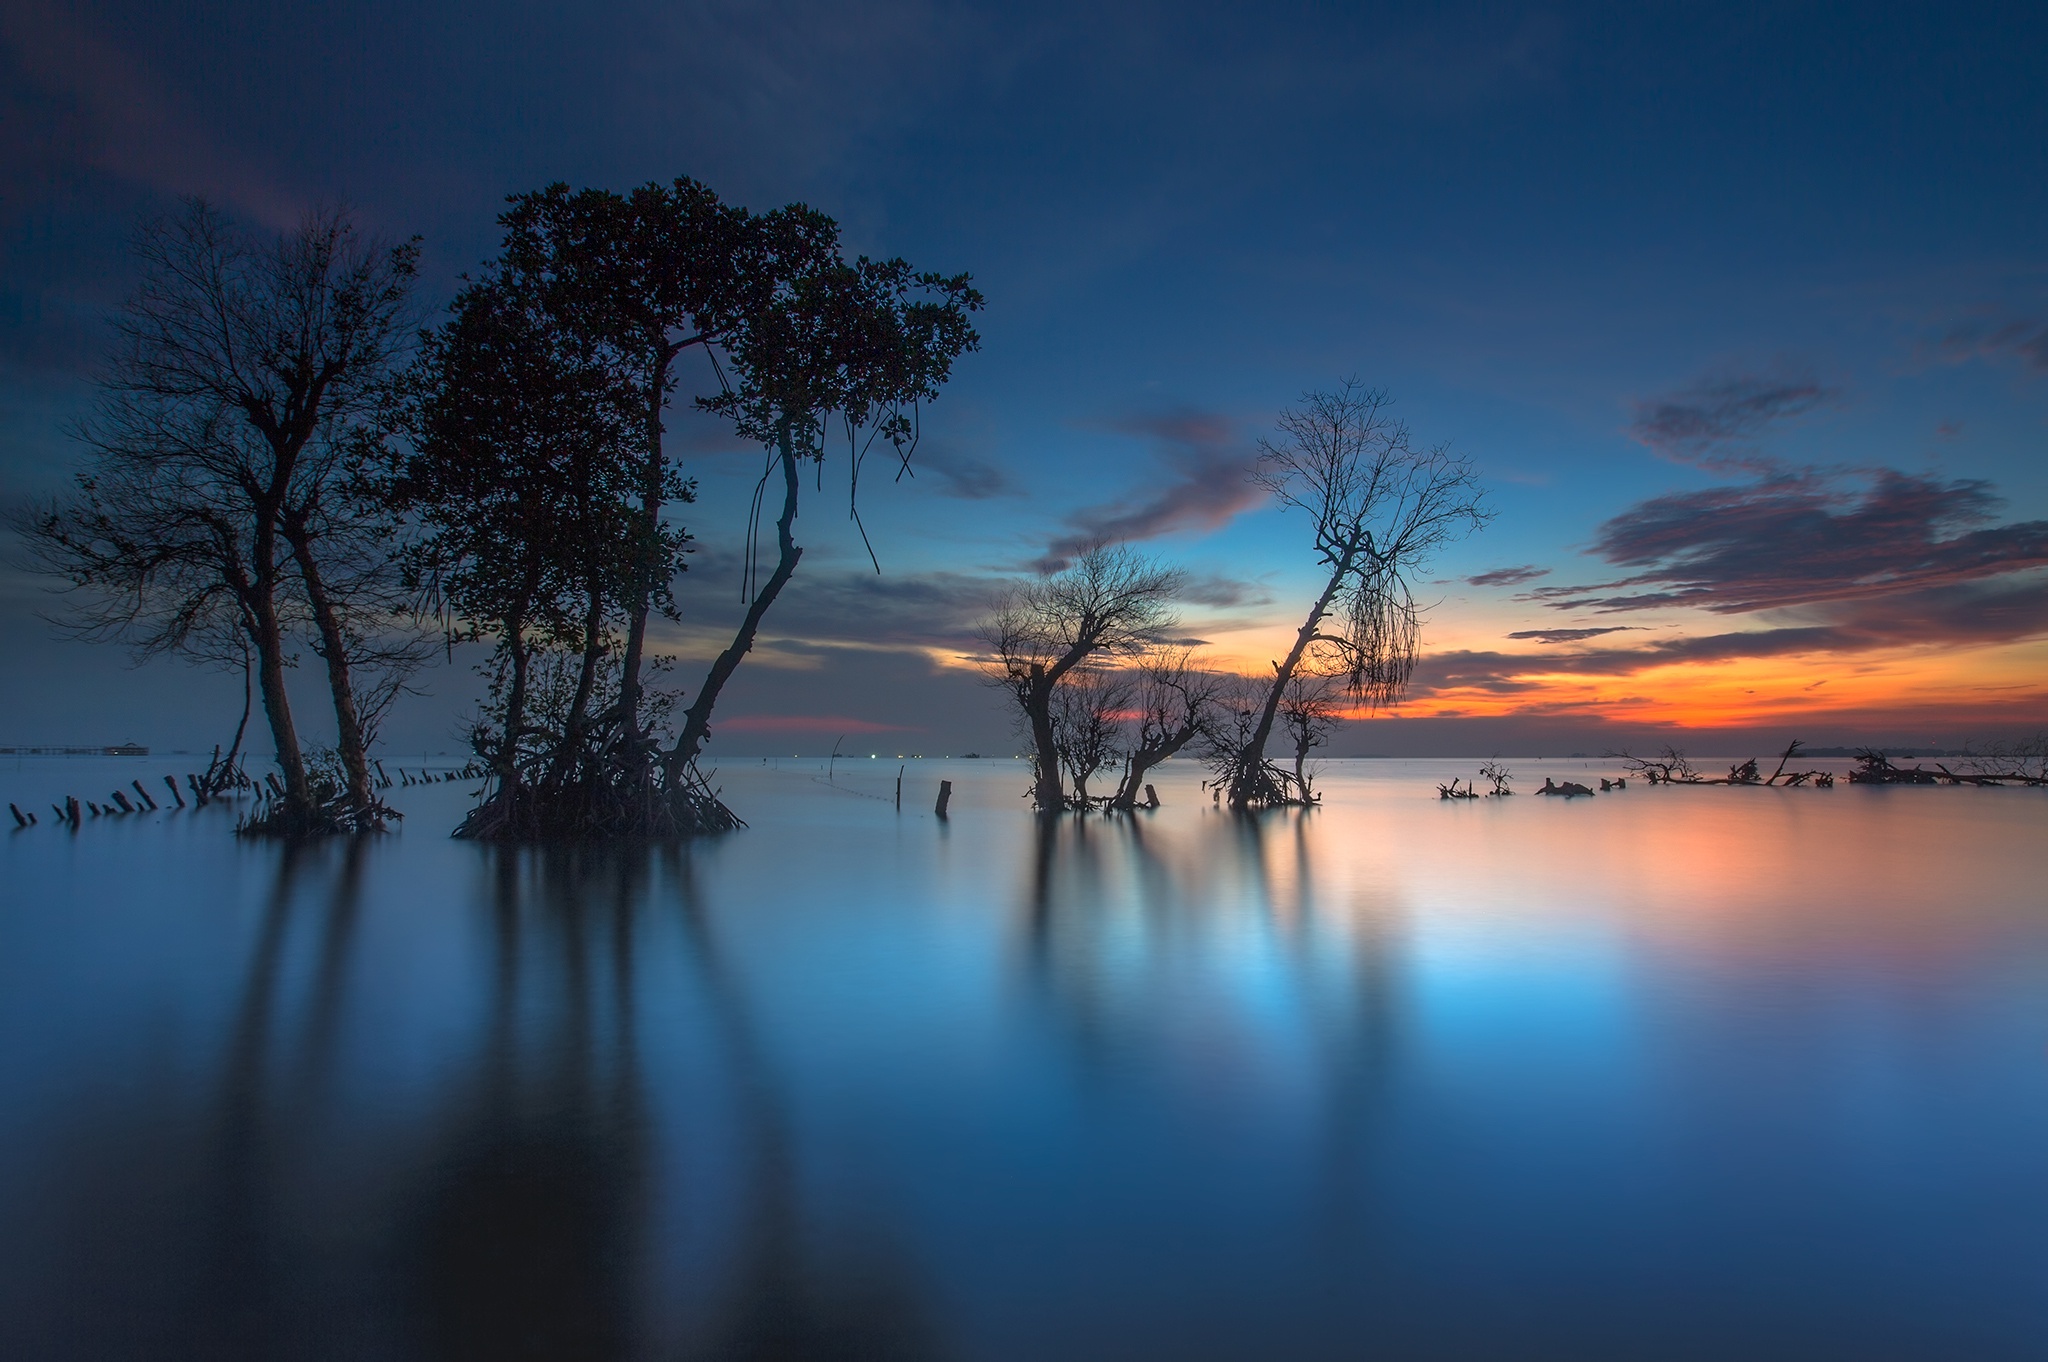 Скачать обои бесплатно Дерево, Залив, Индонезия, Земля/природа, Закат Солнца картинка на рабочий стол ПК